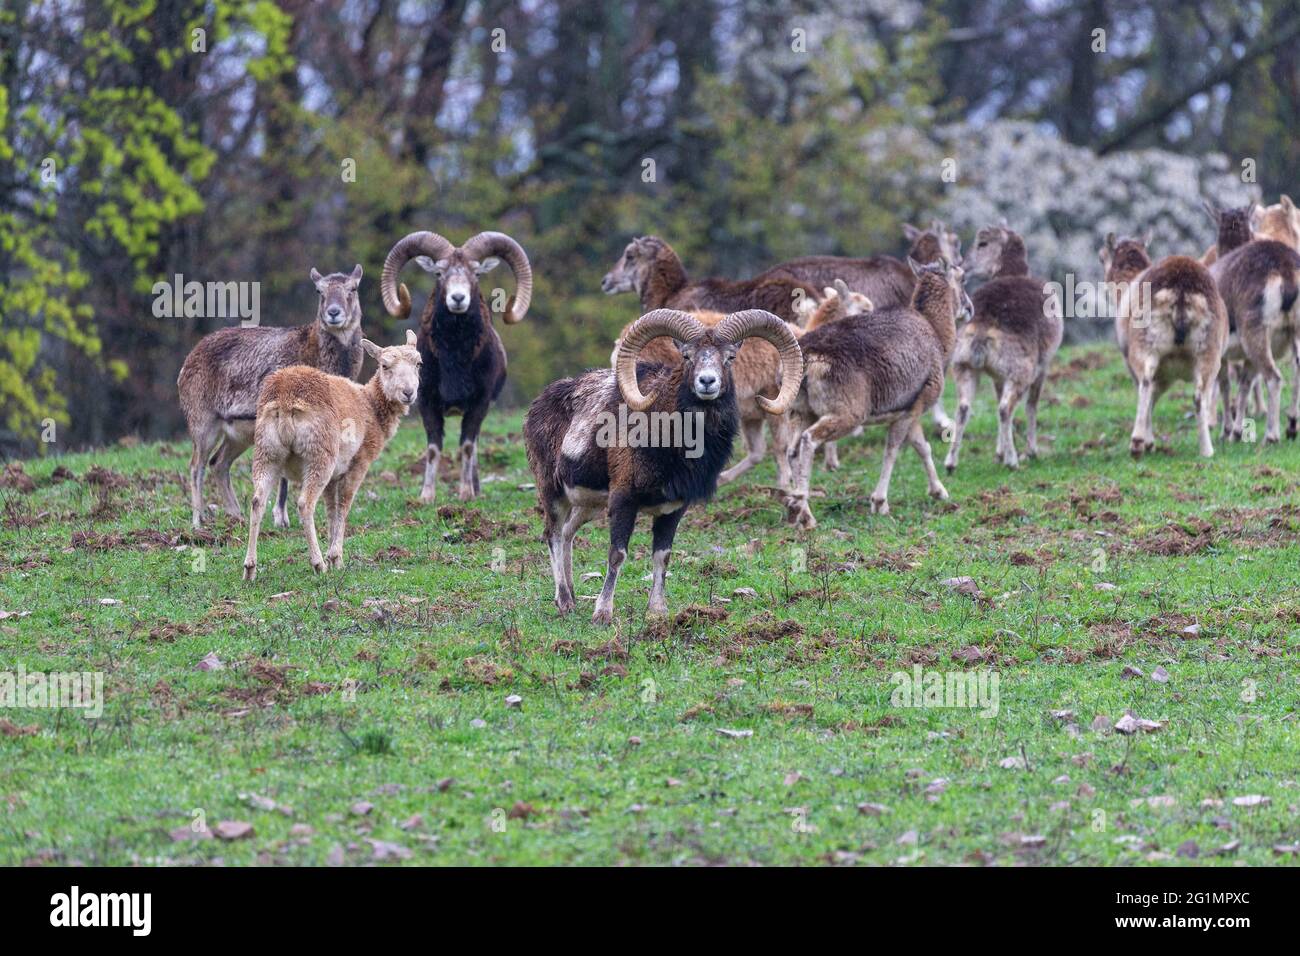 France, haute Saone, Parc privé, Mouflon Rams (Ovis ammon musimon), dans un pré au bord d'une forêt Banque D'Images